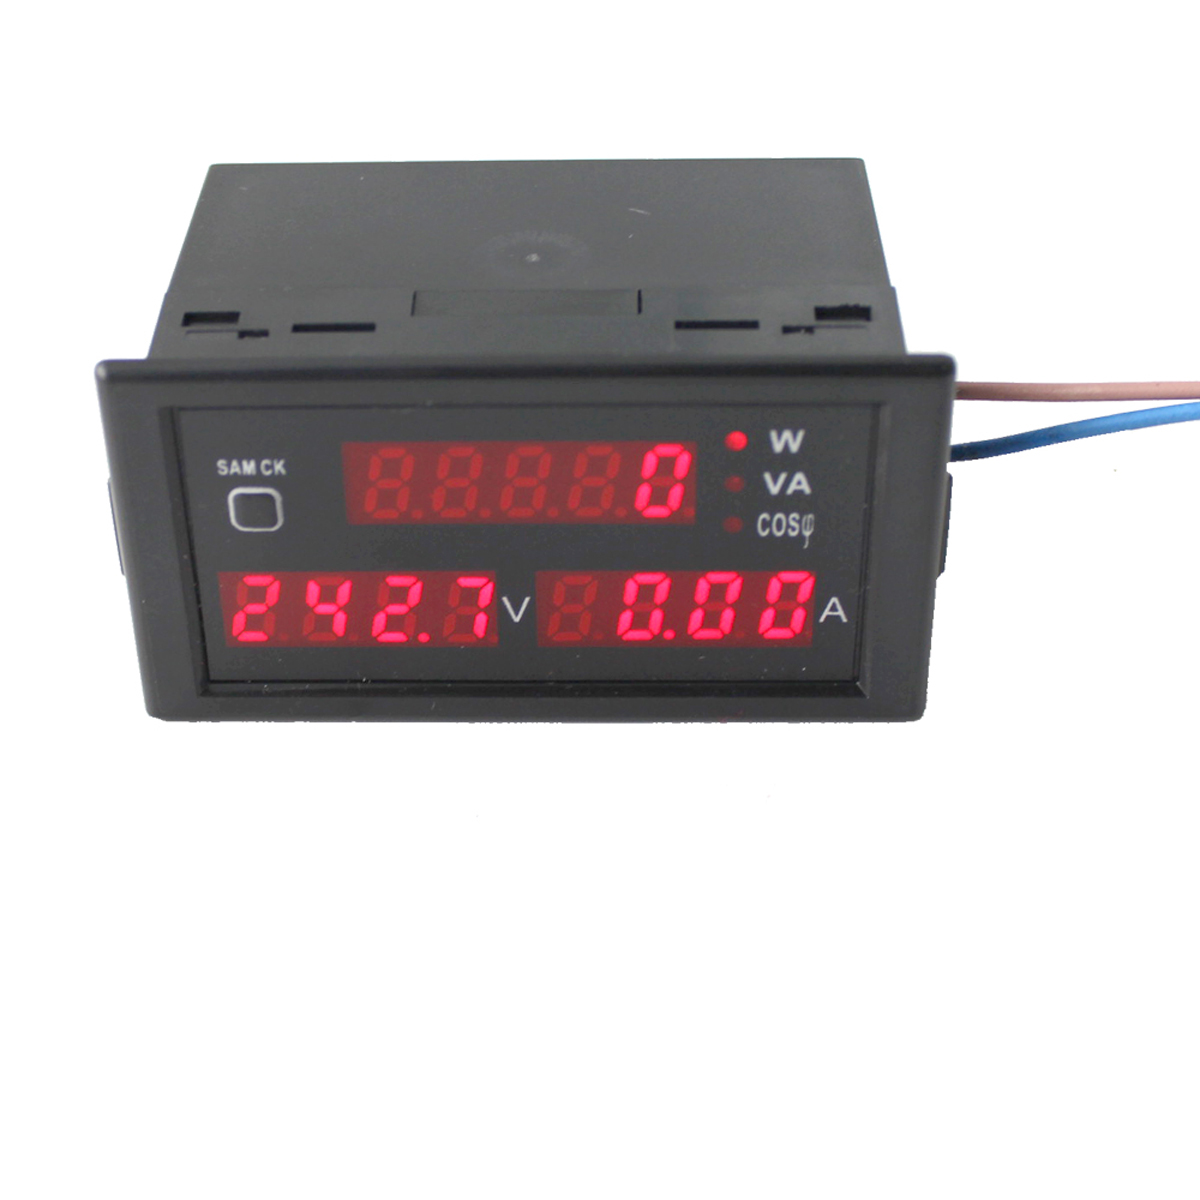 

DL69-2048 LCD Digital Multifunctional AC Voltmeter Ammeter Voltage Current Meter AC 80-300V